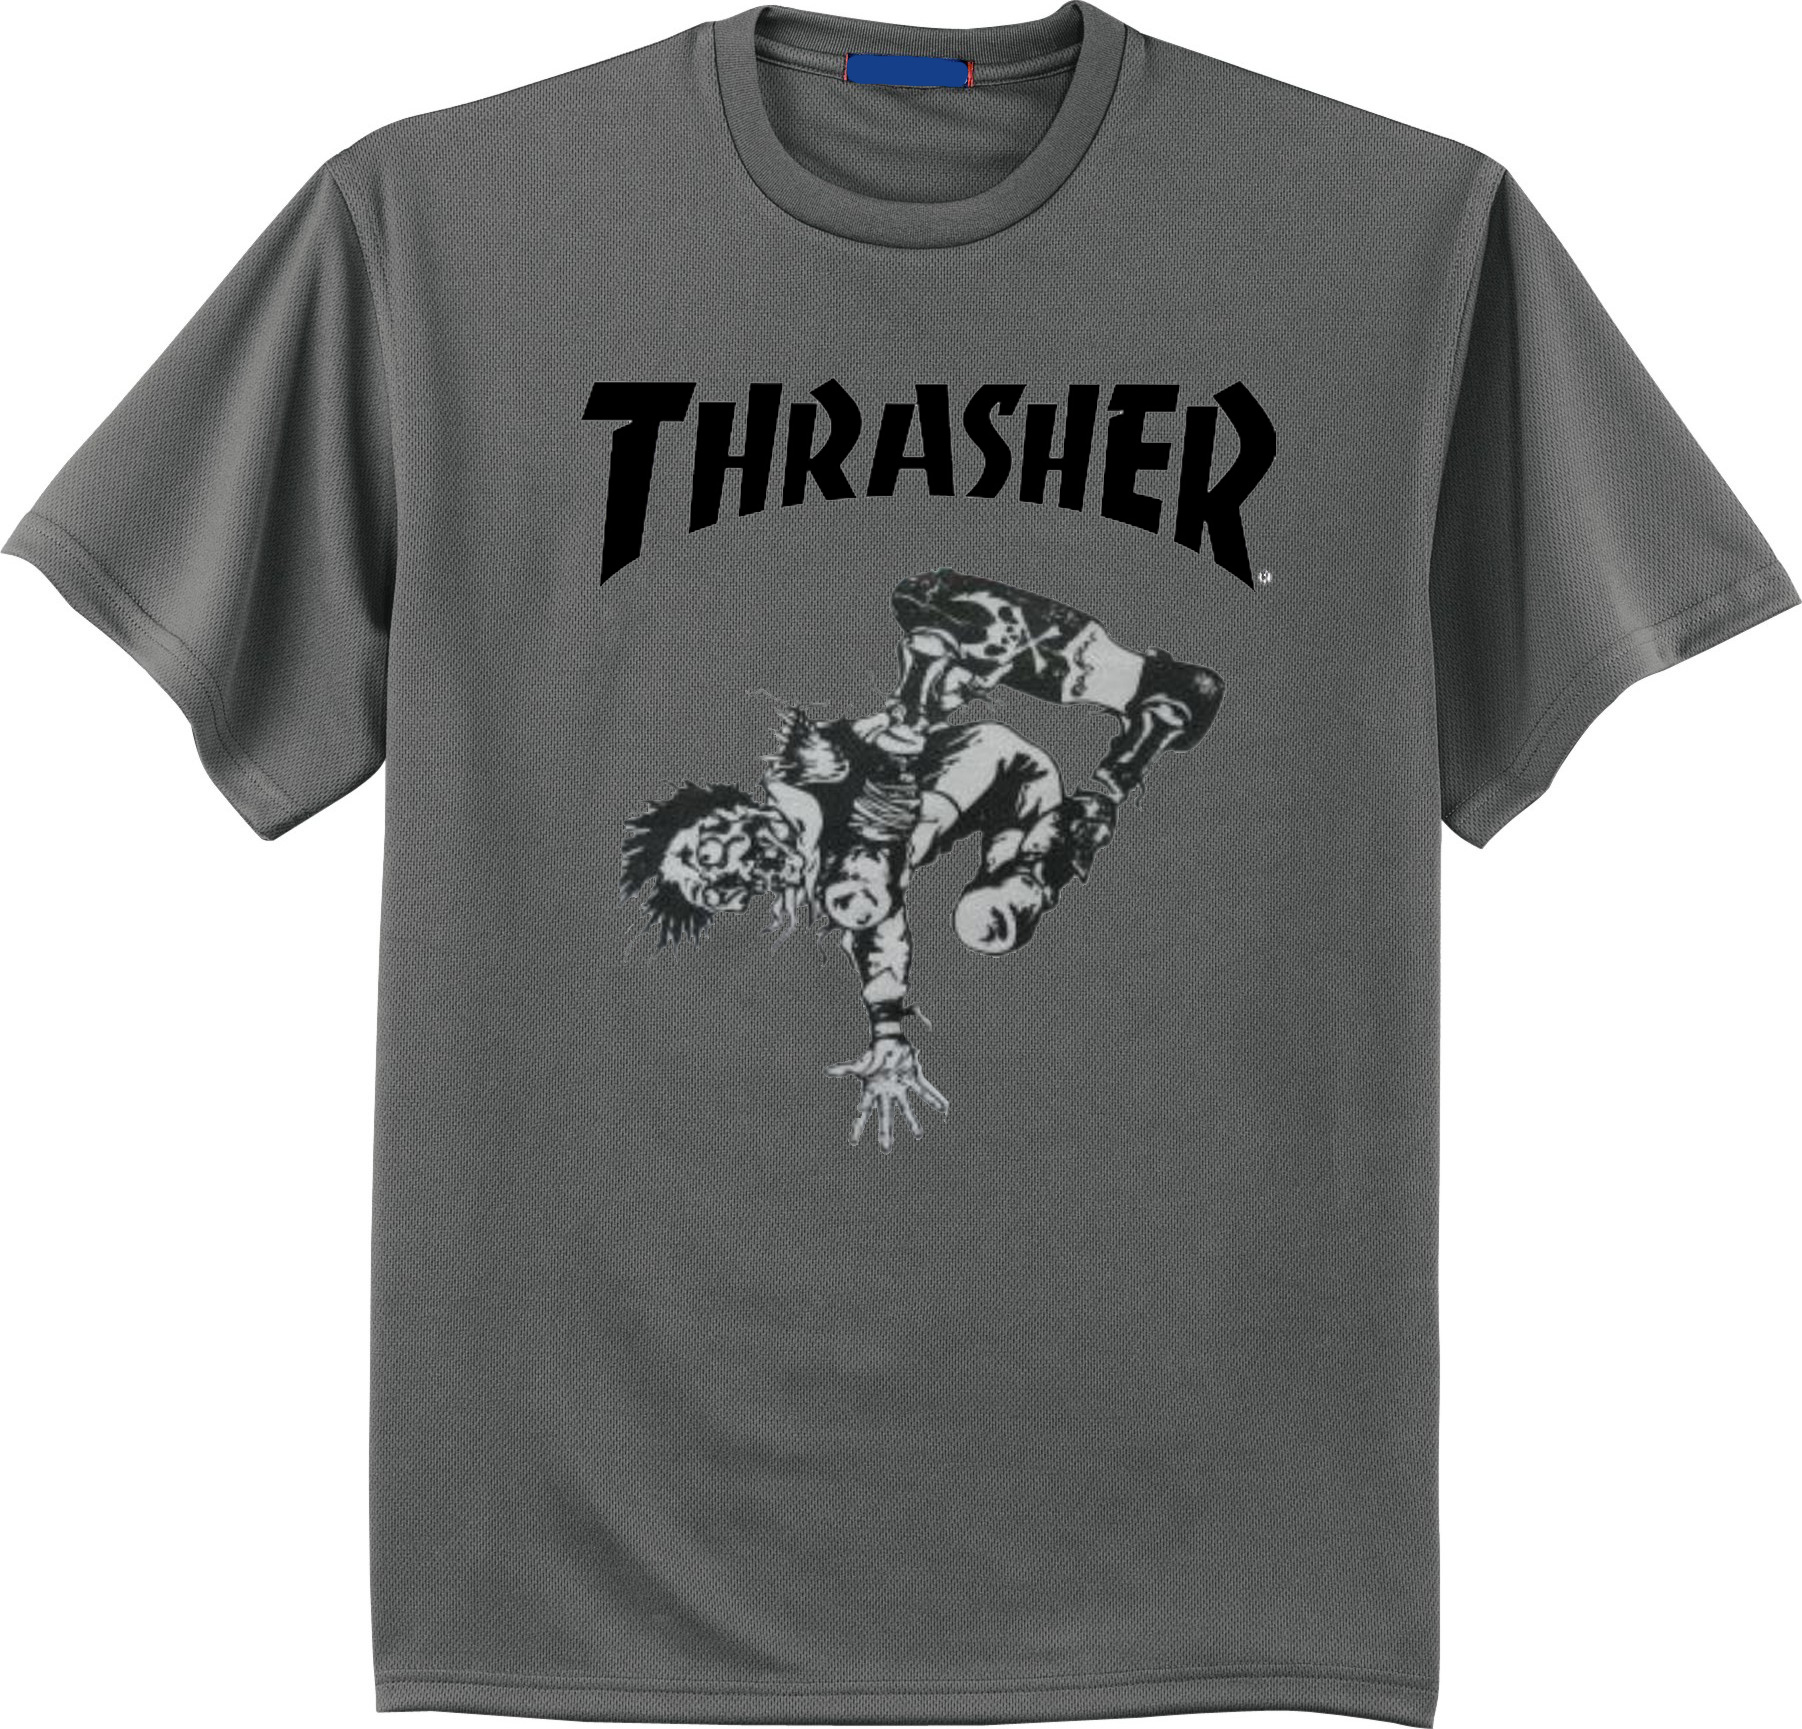 Thrasher Skate Punk T Shirt